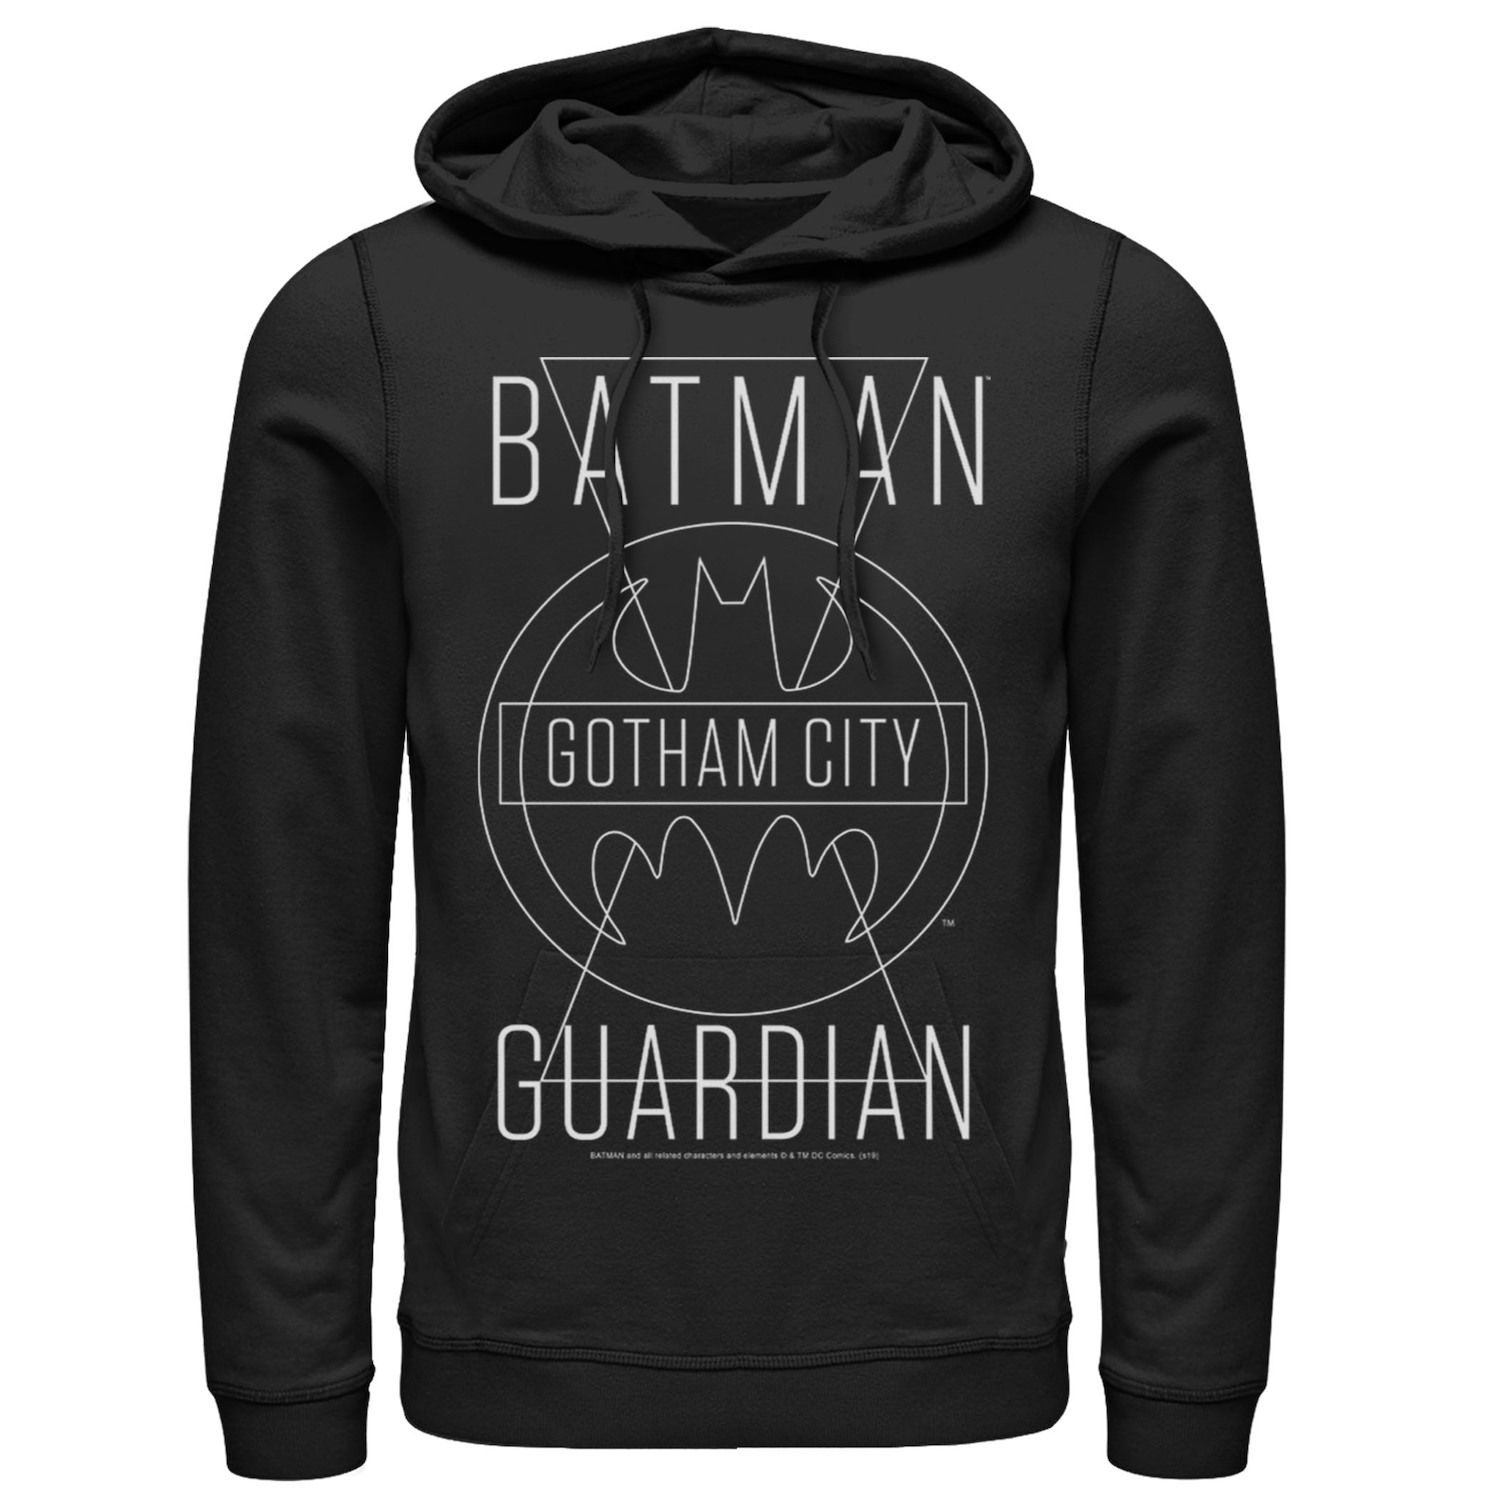 

Мужская толстовка с капюшоном из комиксов DC Бэтмен Готэм-сити Guardian с текстовым плакатом DC Comics, черный